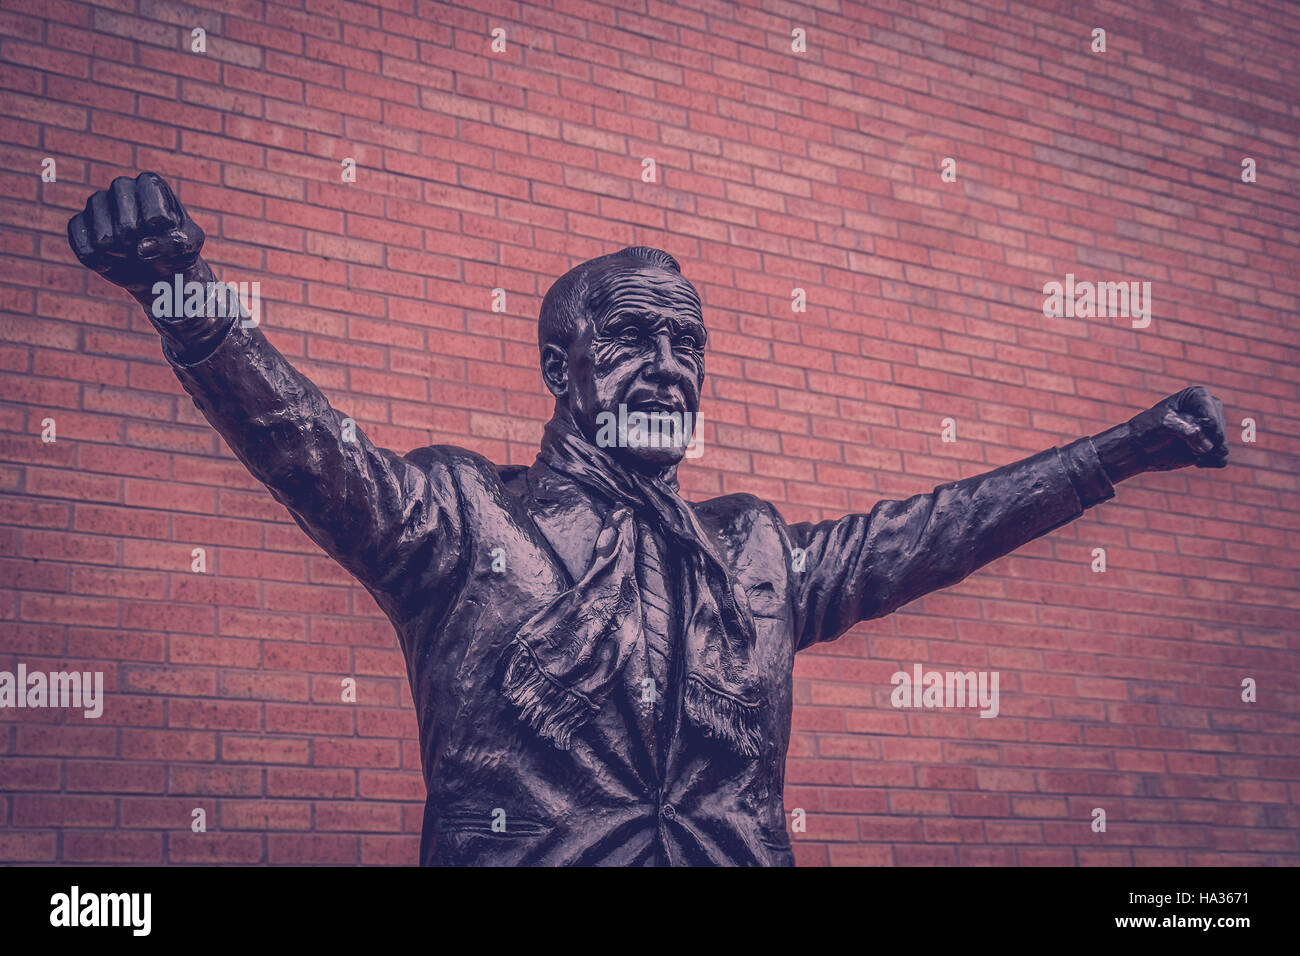 Eine Statue von Bill Shankly außen Anfield Road, der Heimat des FC Liverpool.  Shankly ist wohl die bekannteste Figur in Liverpool Football Club illustrio Stockfoto